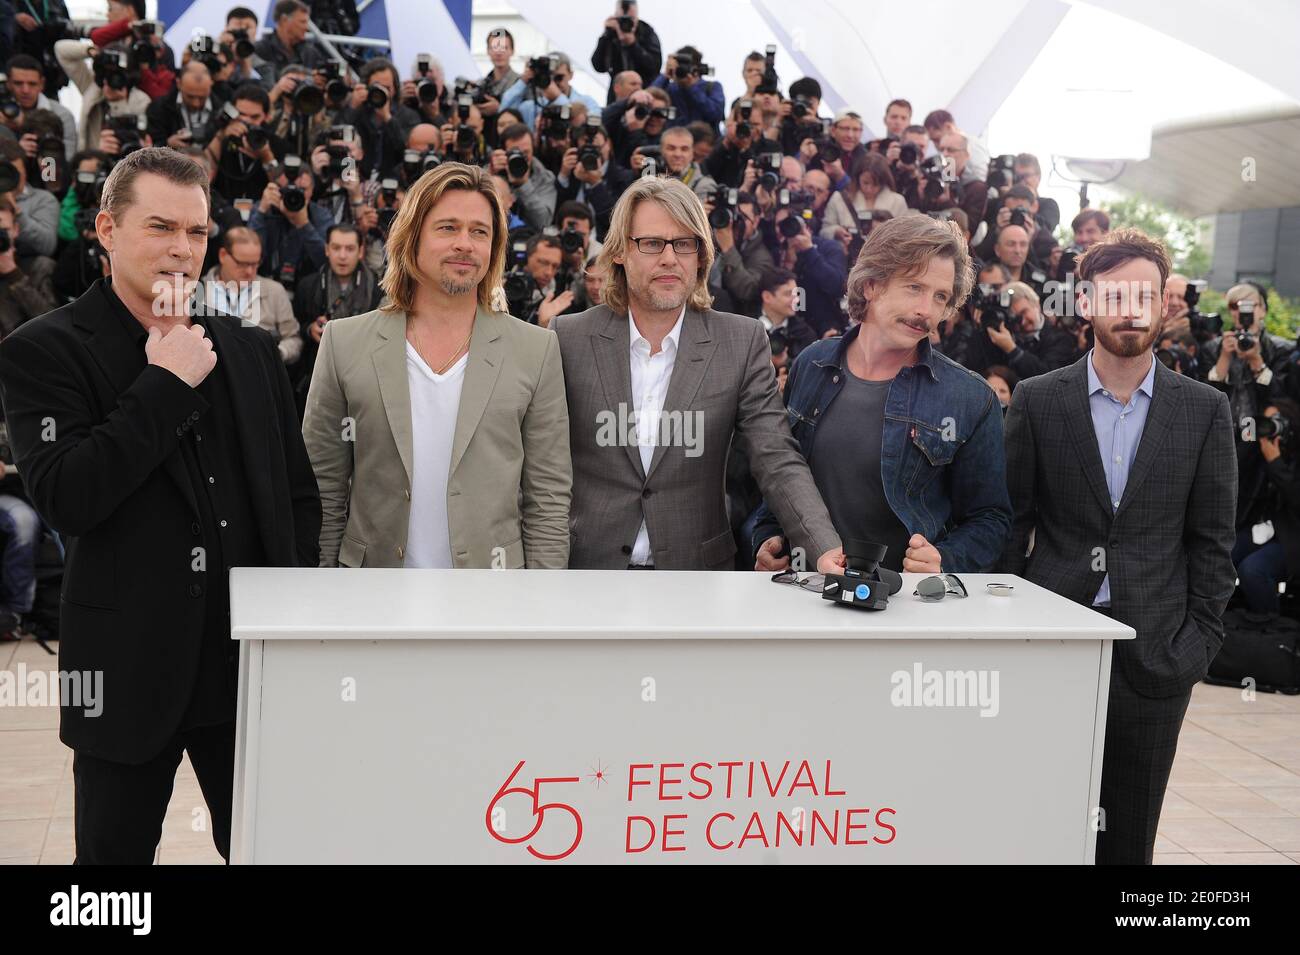 Ray Liotta, Brad Pitt, Andrew Dominik e Scoot Mcnairy posano durante la fotocellula di "ucciderli dolcemente" come parte del sessantacinquesimo Festival di Cannes, in Francia, il 22 maggio 2012. Foto di Lionel Hahn/ABACAPRESS.COM Foto Stock